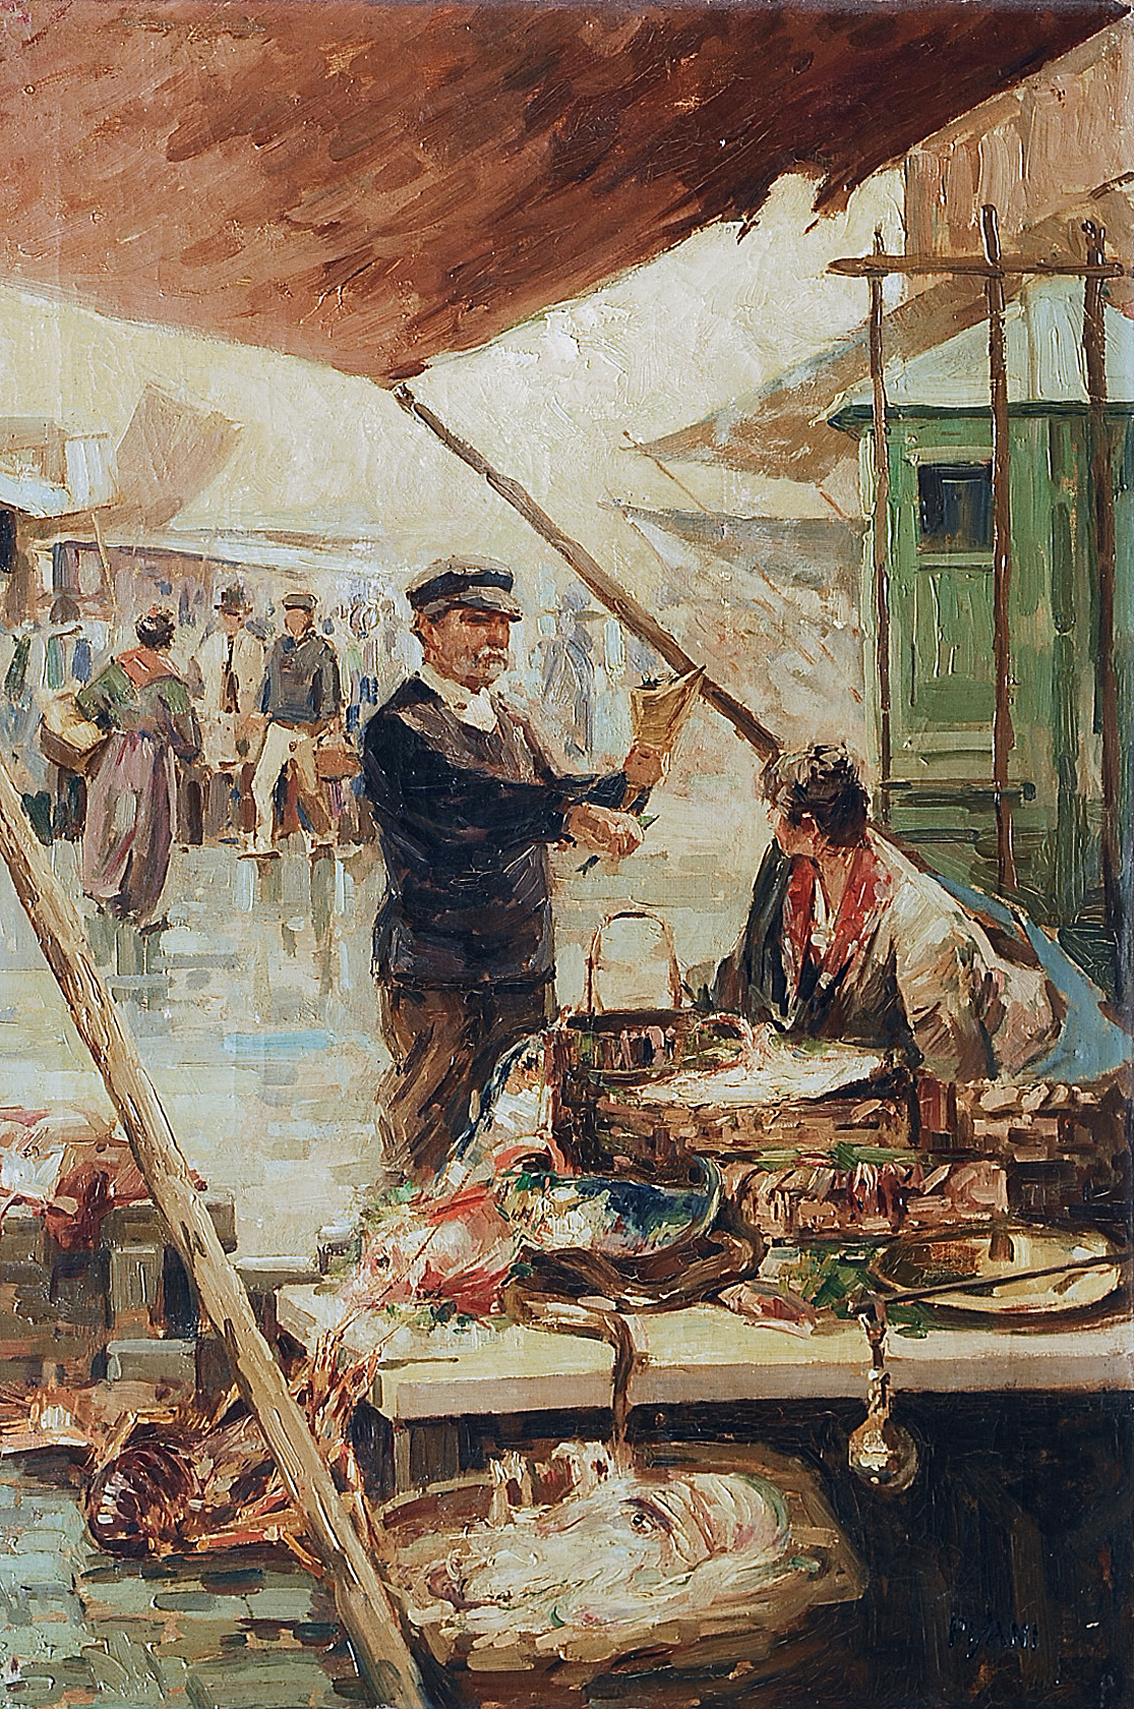 Fischmarkt in Neapel